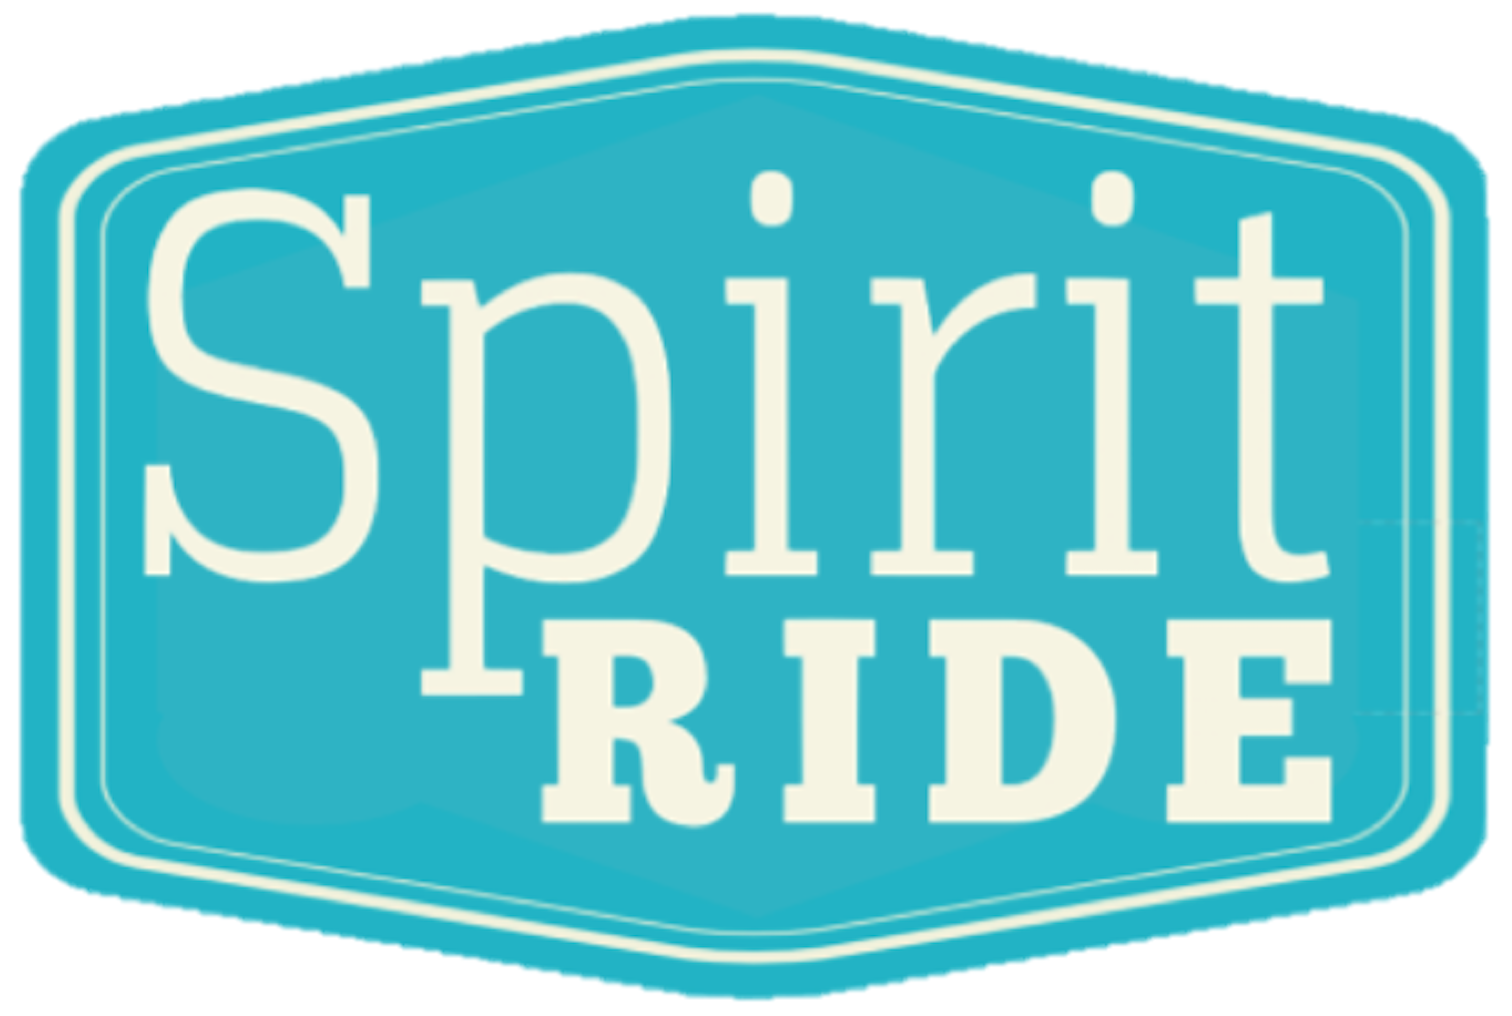 Spirit Ride Therapeutic Riding Center